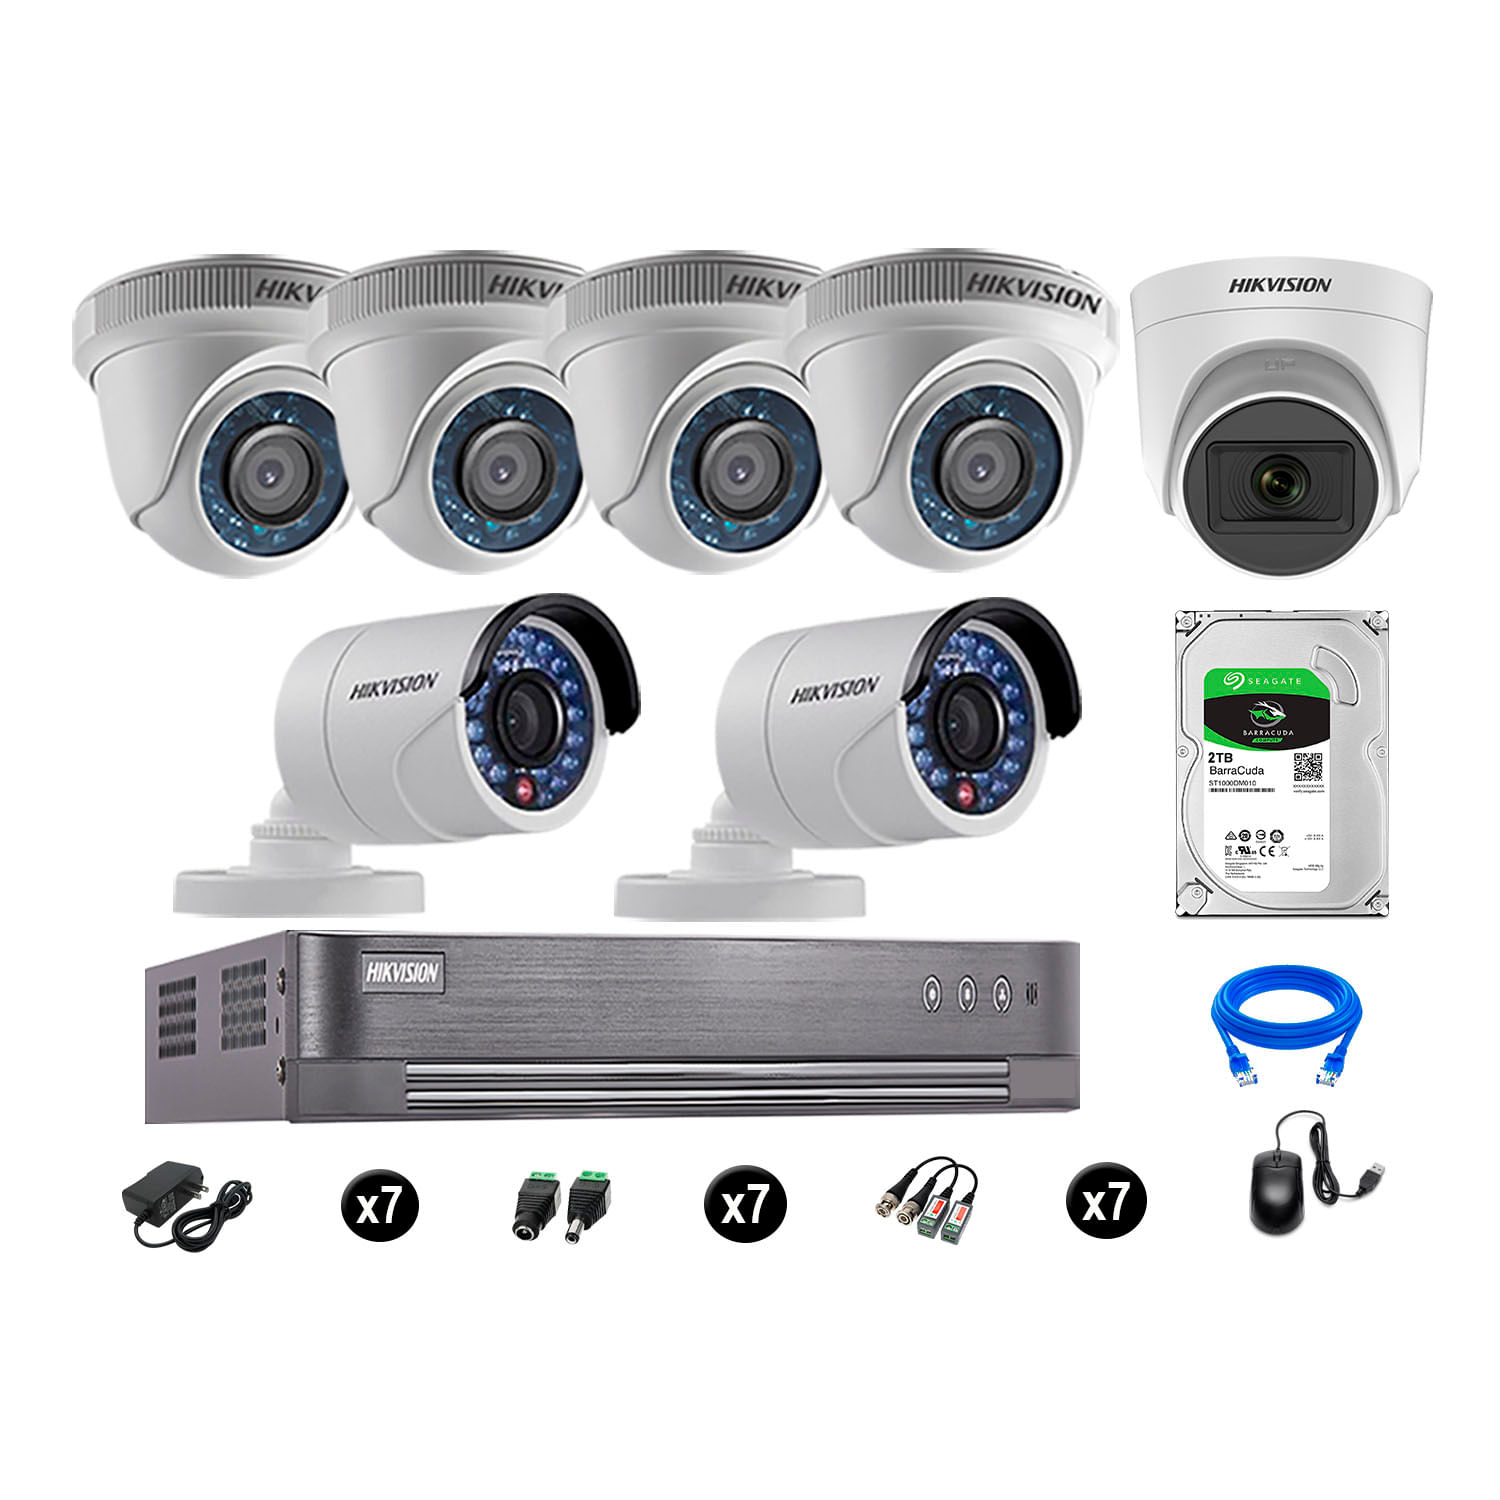 Cámaras de Seguridad Hikvision Kit 7 Vigilancia Hd 720P 2Tb 1 Cámara con Audio